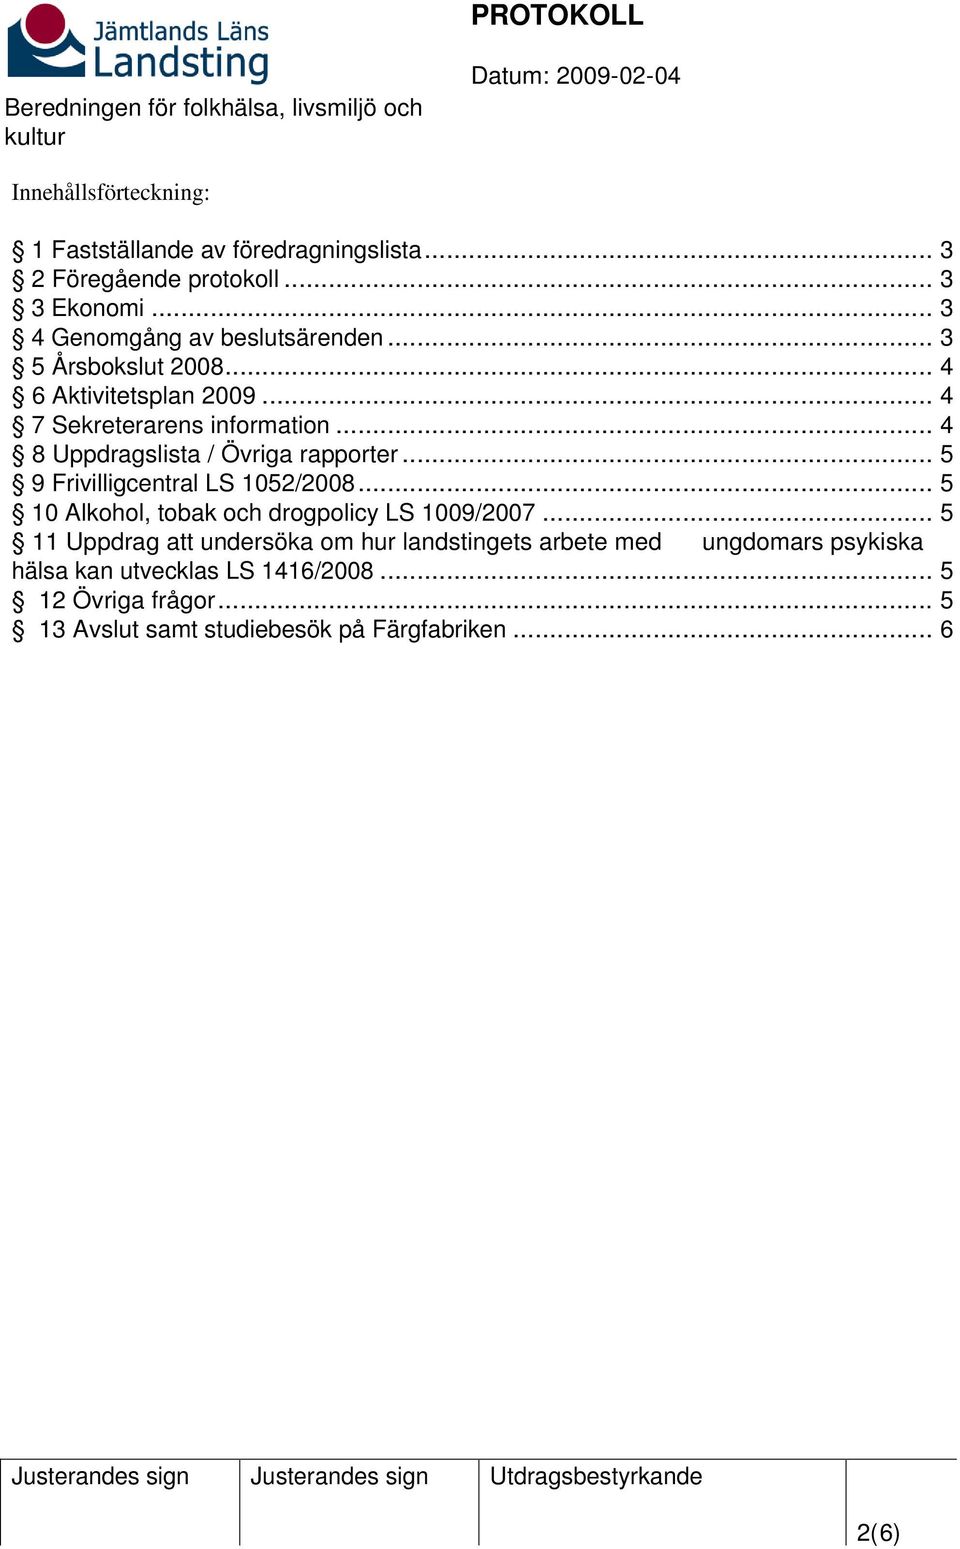 .. 5 9 Frivilligcentral LS 1052/2008... 5 10 Alkohol, tobak och drogpolicy LS 1009/2007.